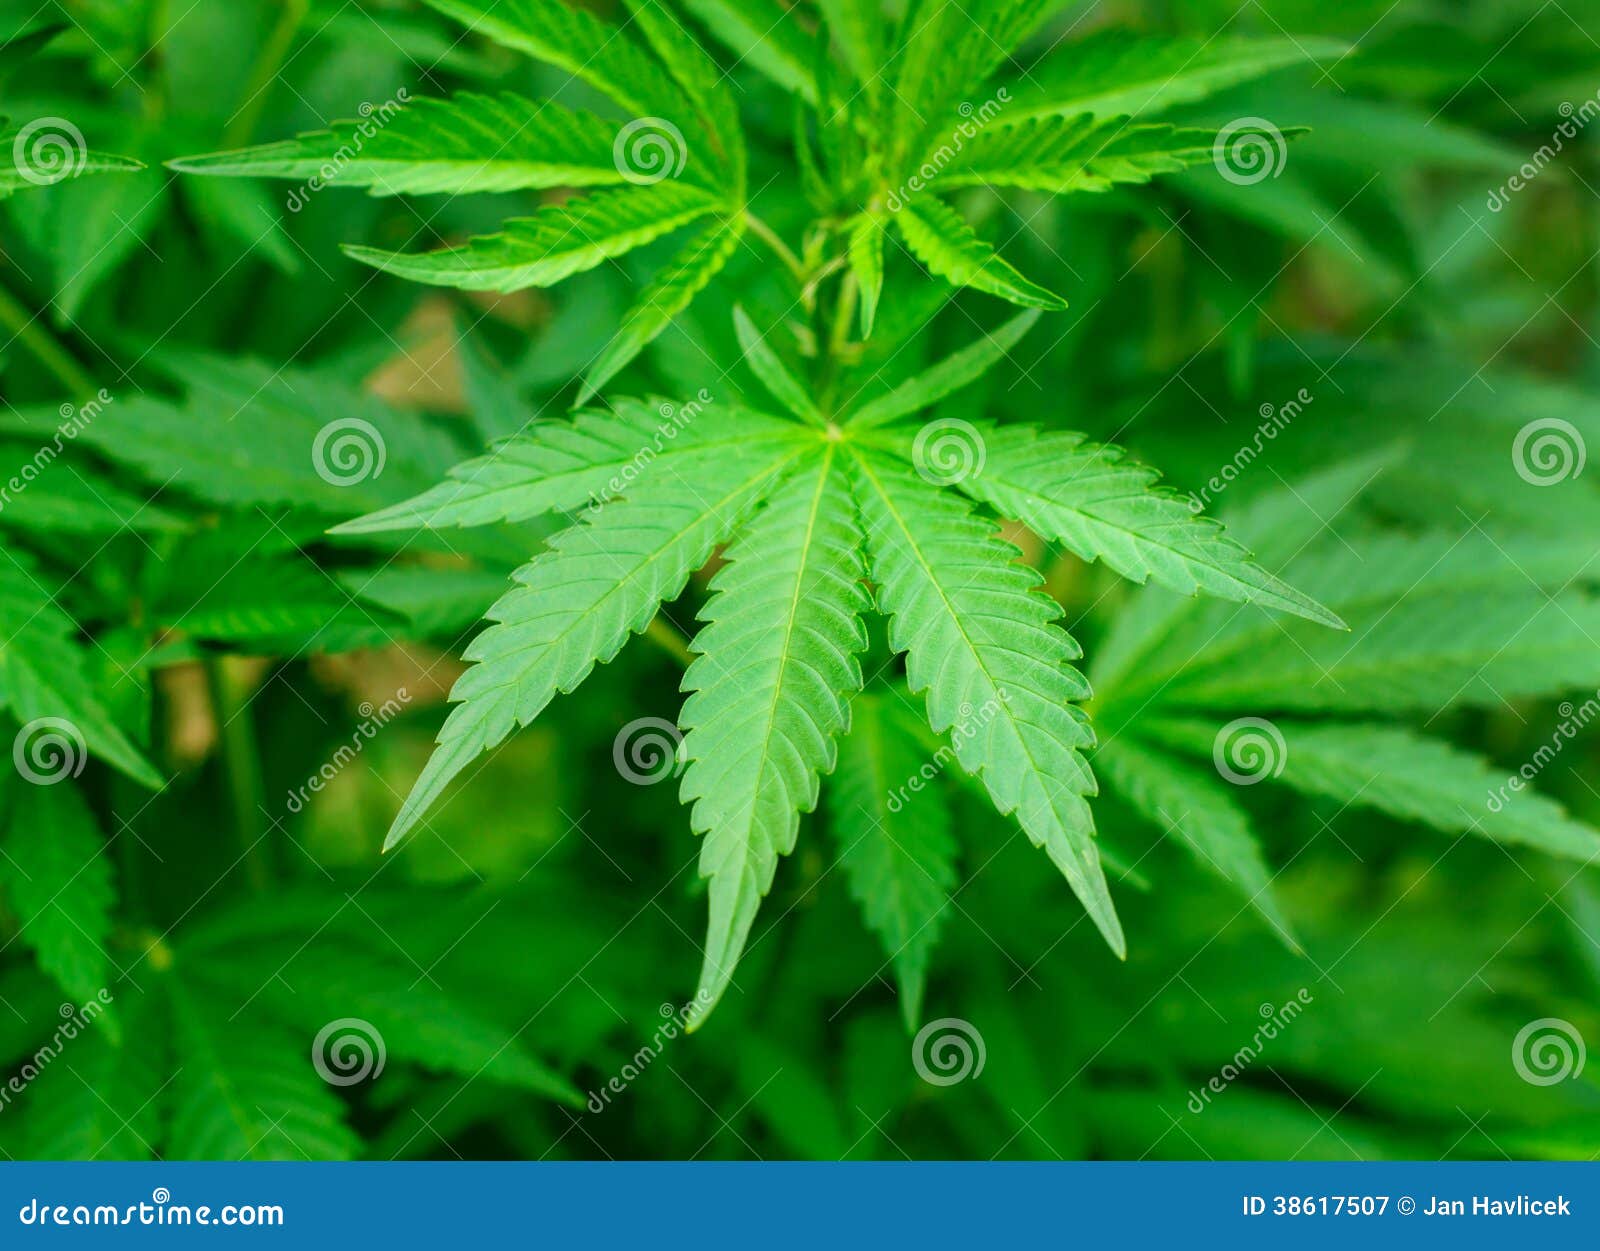 Folha da marijuana. Vista na folha verde da marijuana no campo